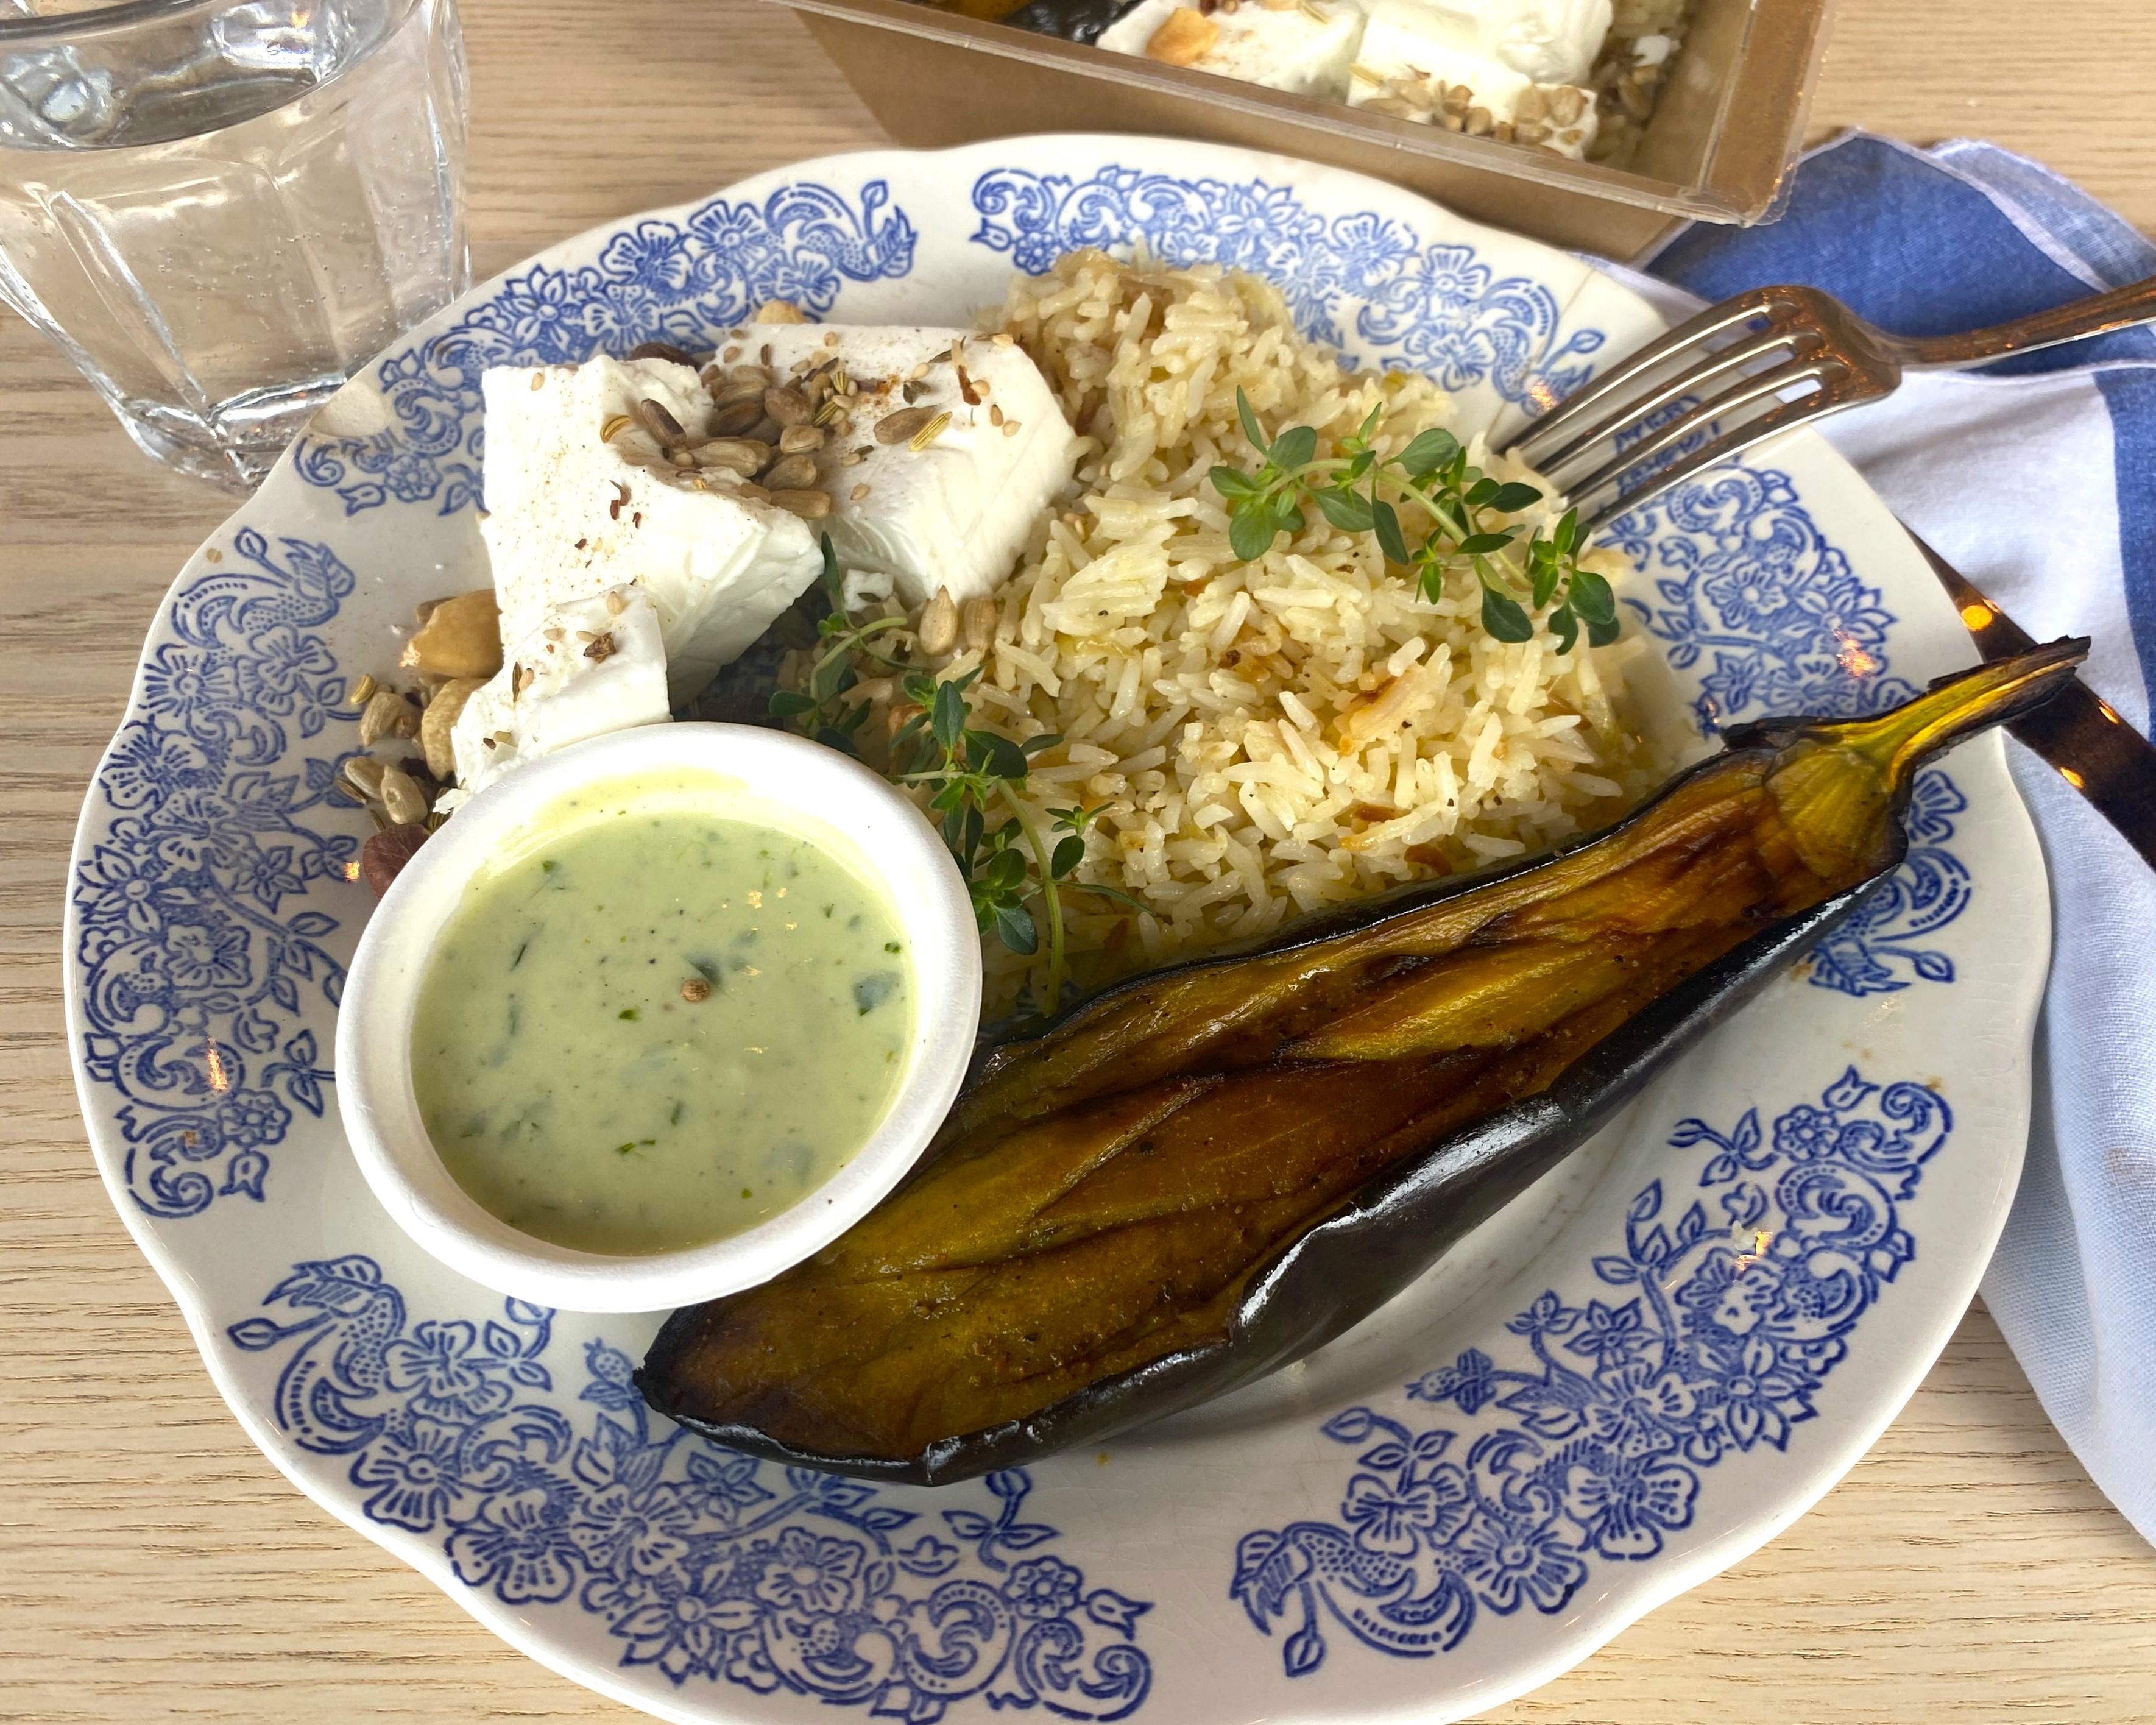 Feta en aubergine geroosterd met kruiden, rijst met uien (gerecht opnieuw opwarmen)